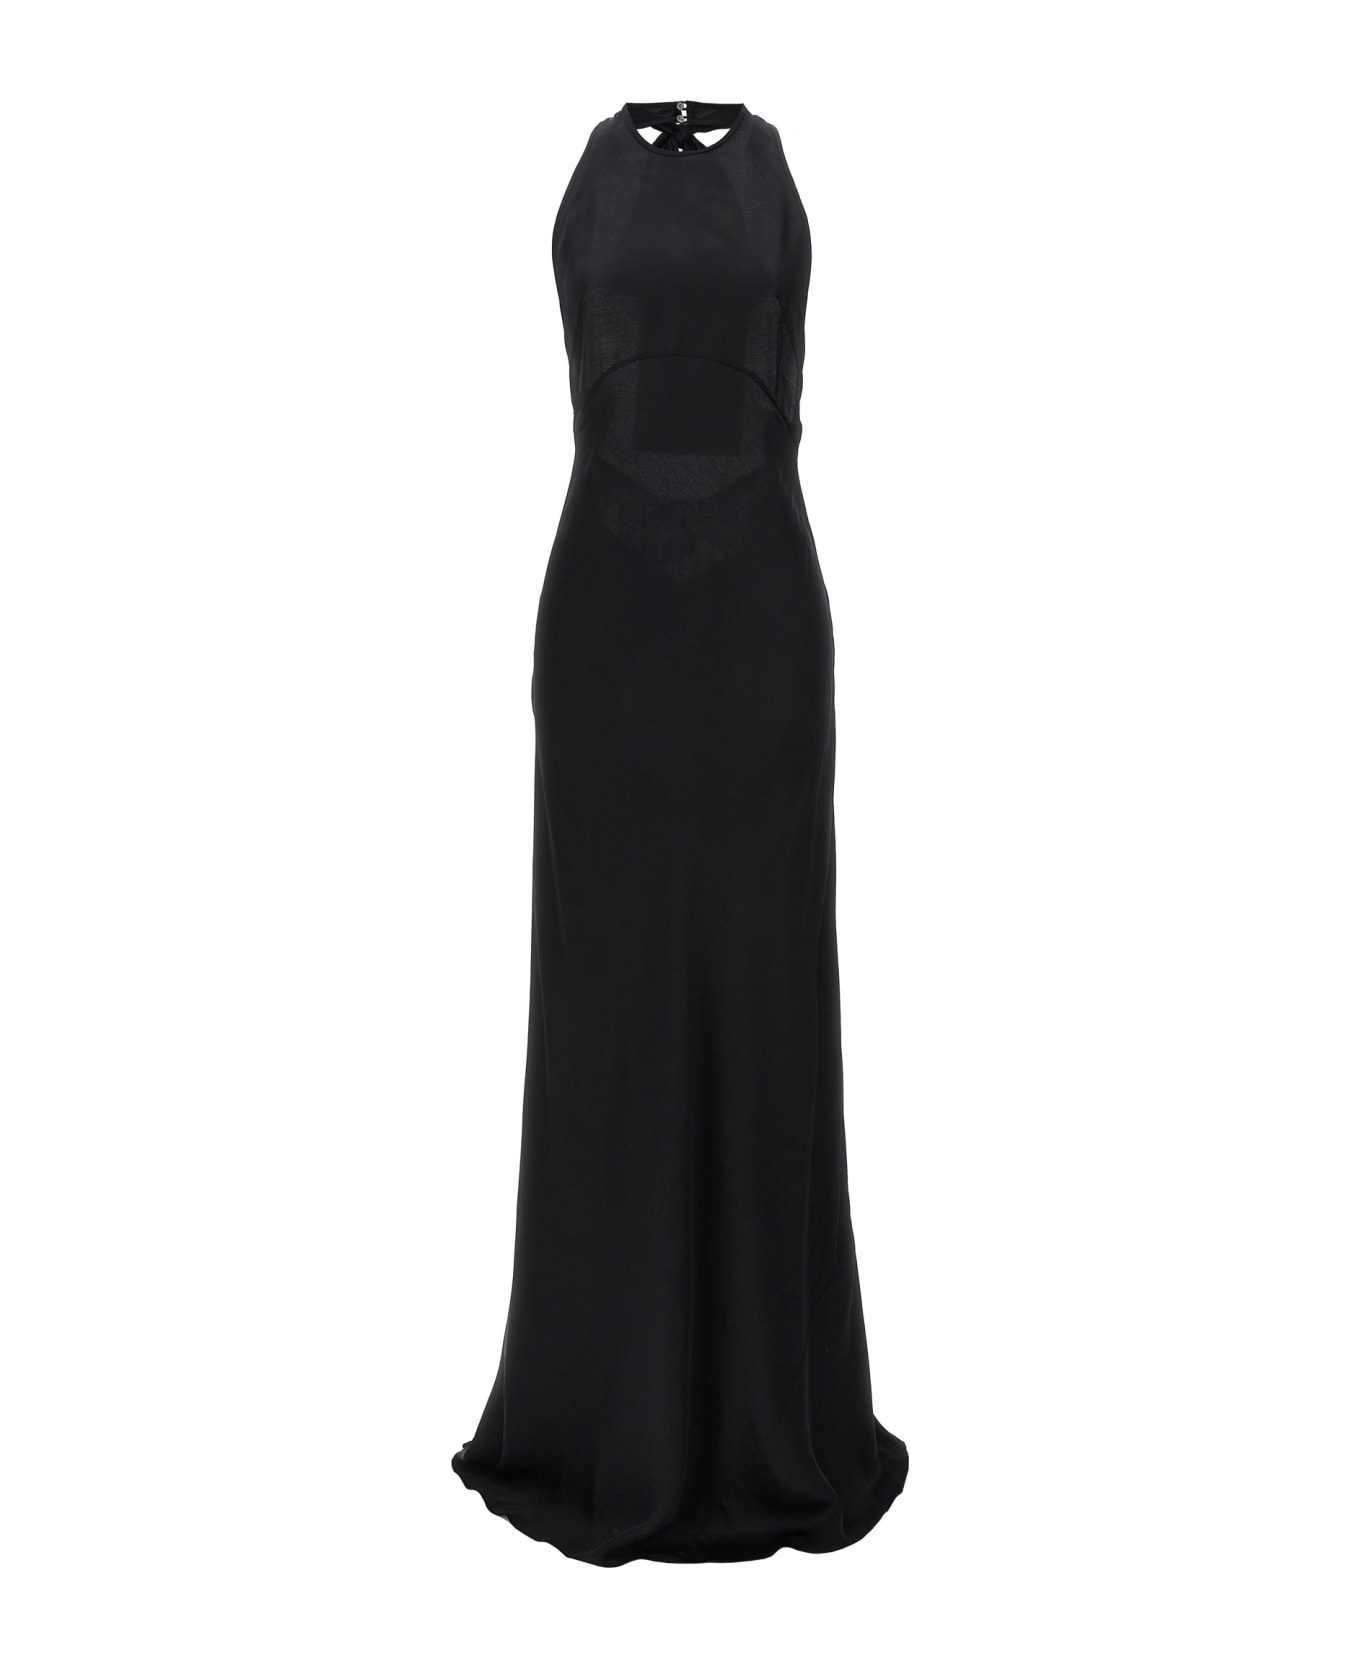 N.21 Lace Satin Long Dress - Black  